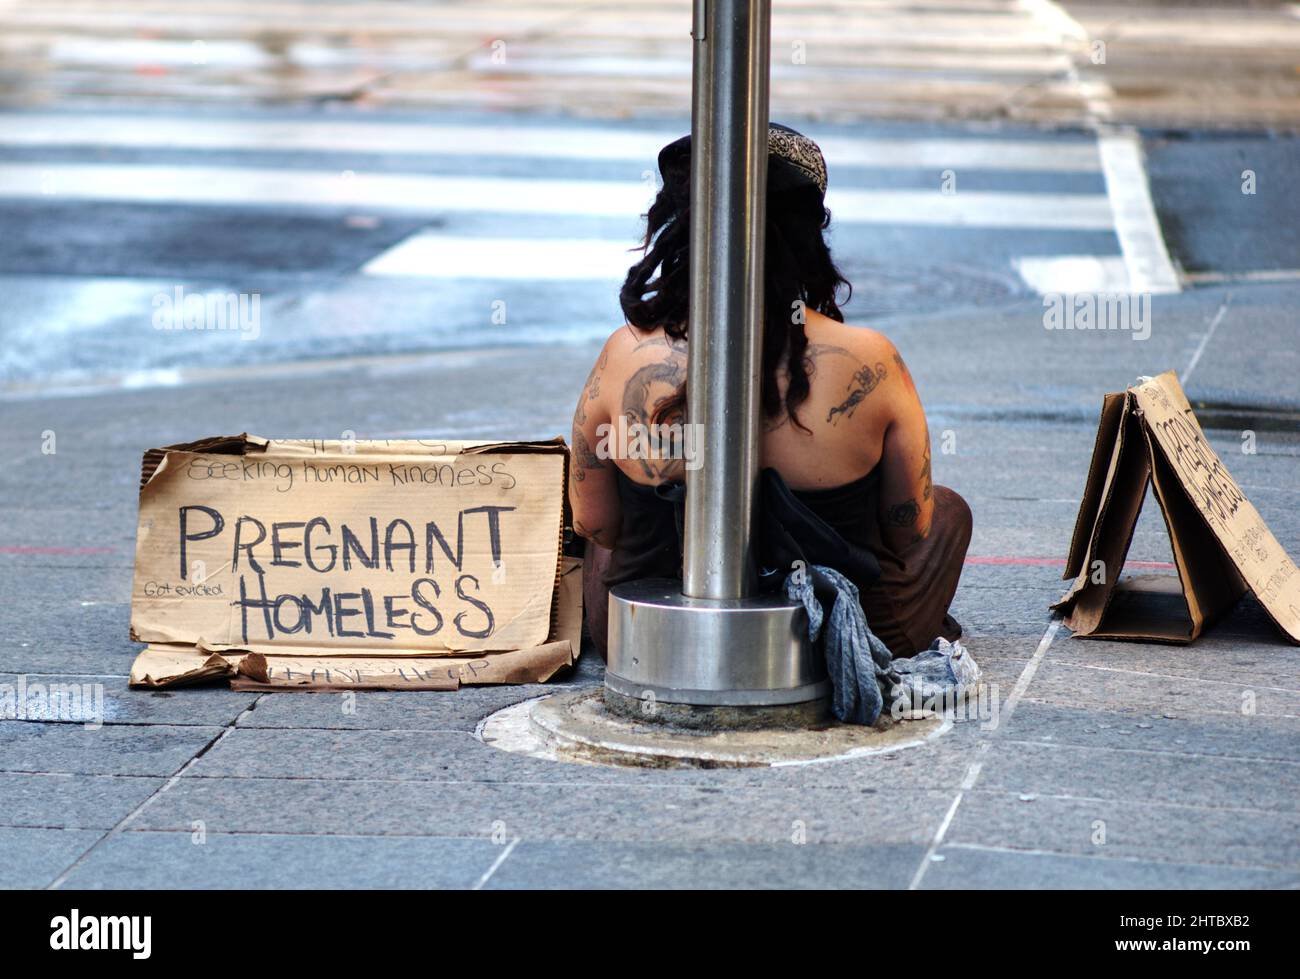 homeless shelter for pregnant women